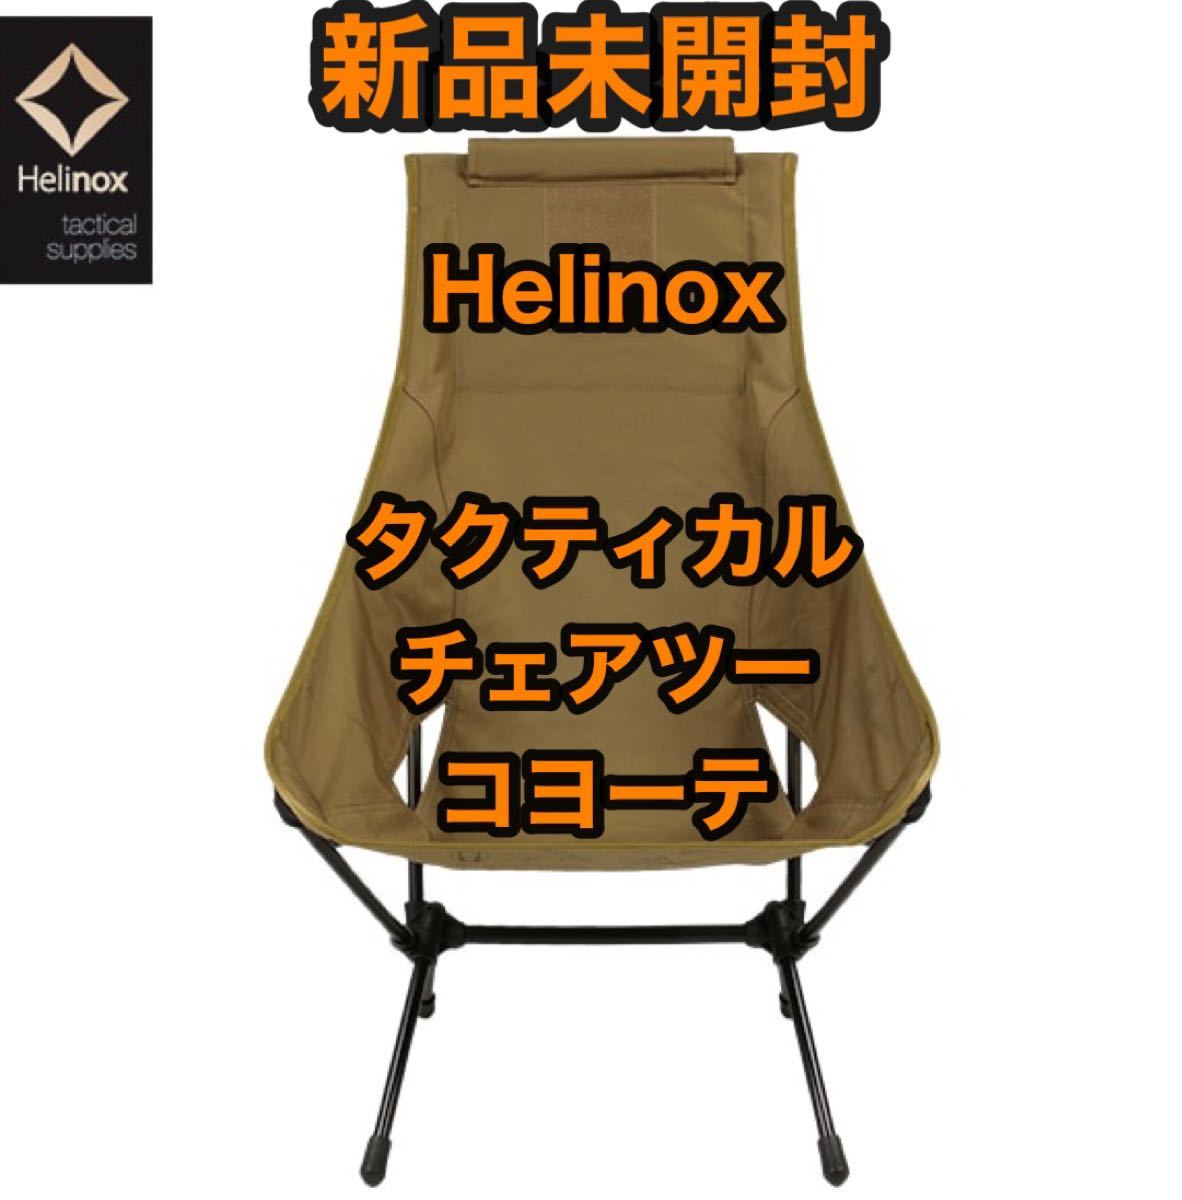 【新品未開封】 ヘリノックス Helinox タクティカル チェアツー コヨーテ タン